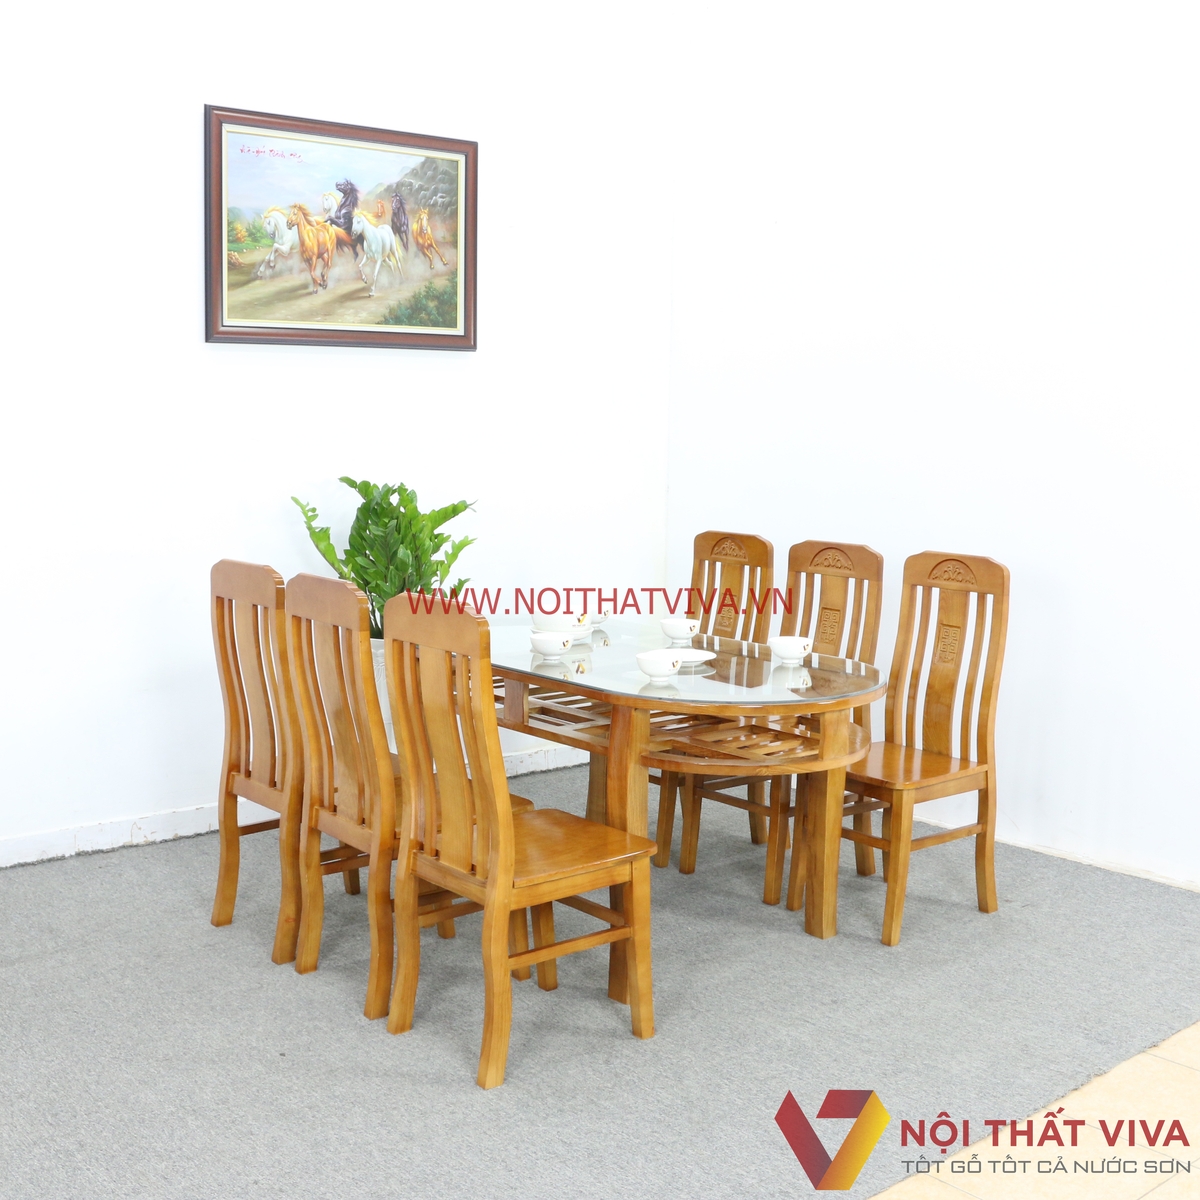 Mẹo chọn bộ bàn ăn 6 ghế phù hợp nhất cho gia đình - Nội thất Viva